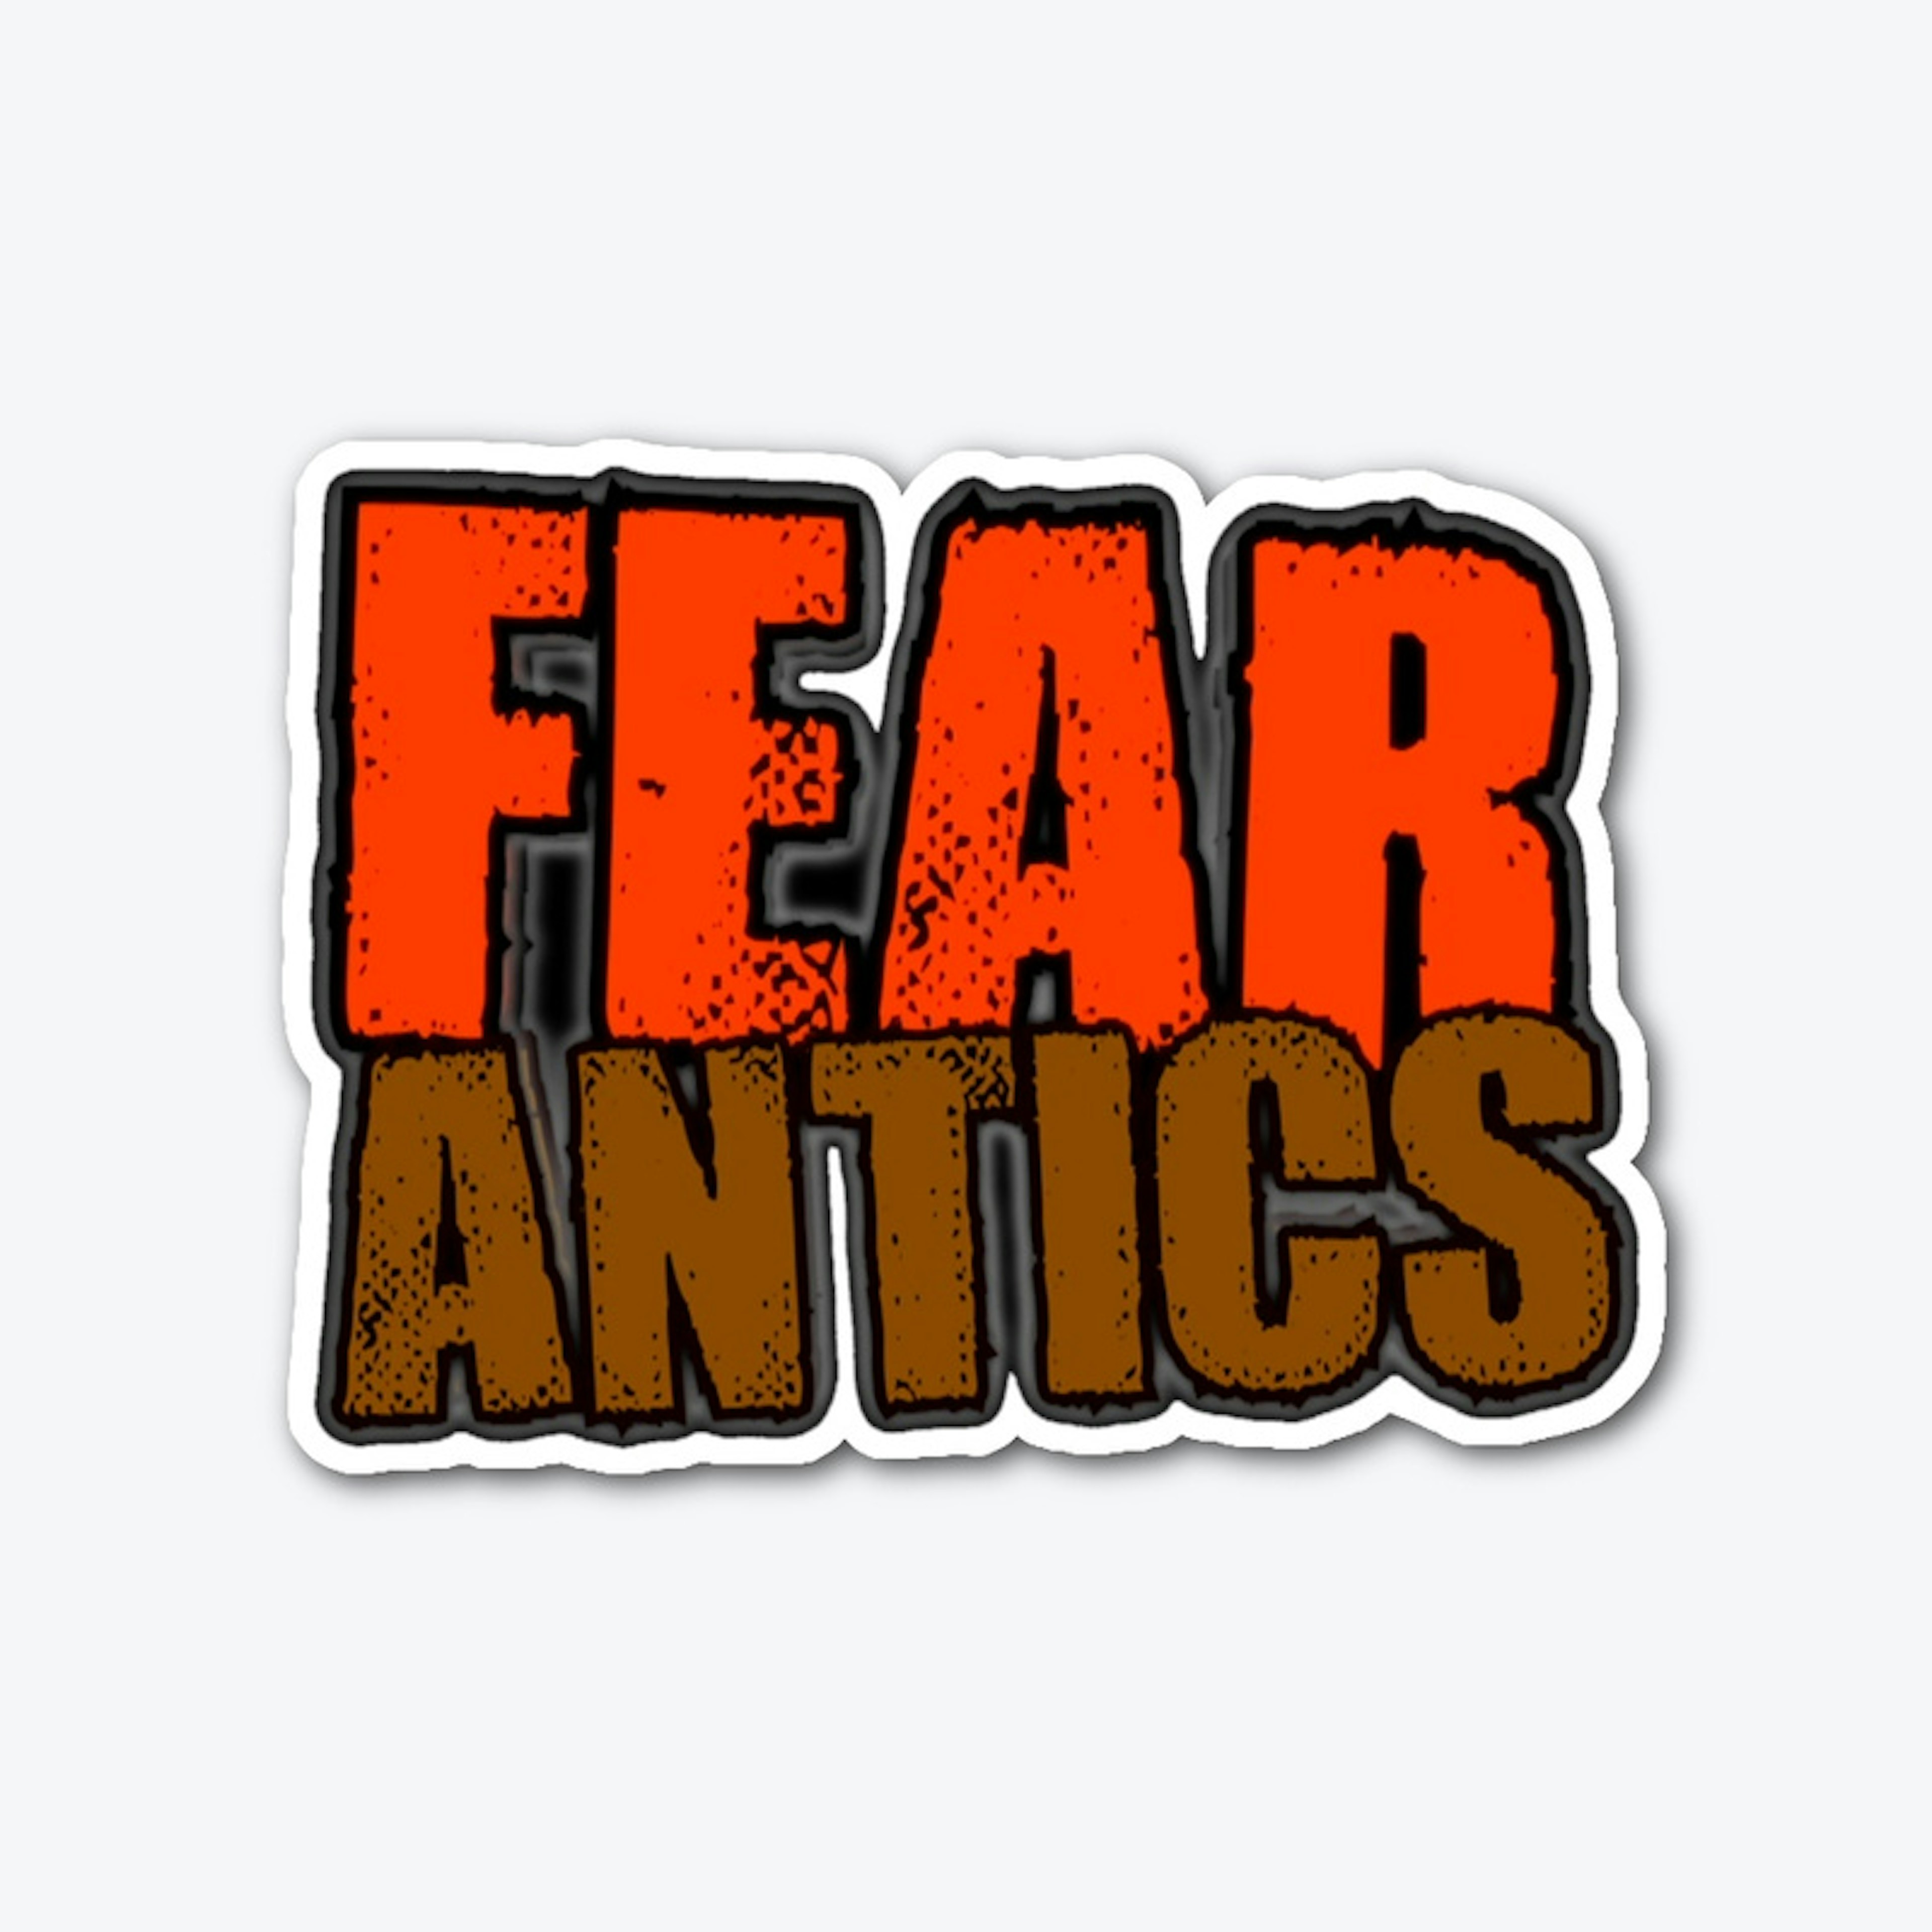 Fear Antics - I Have Warrants